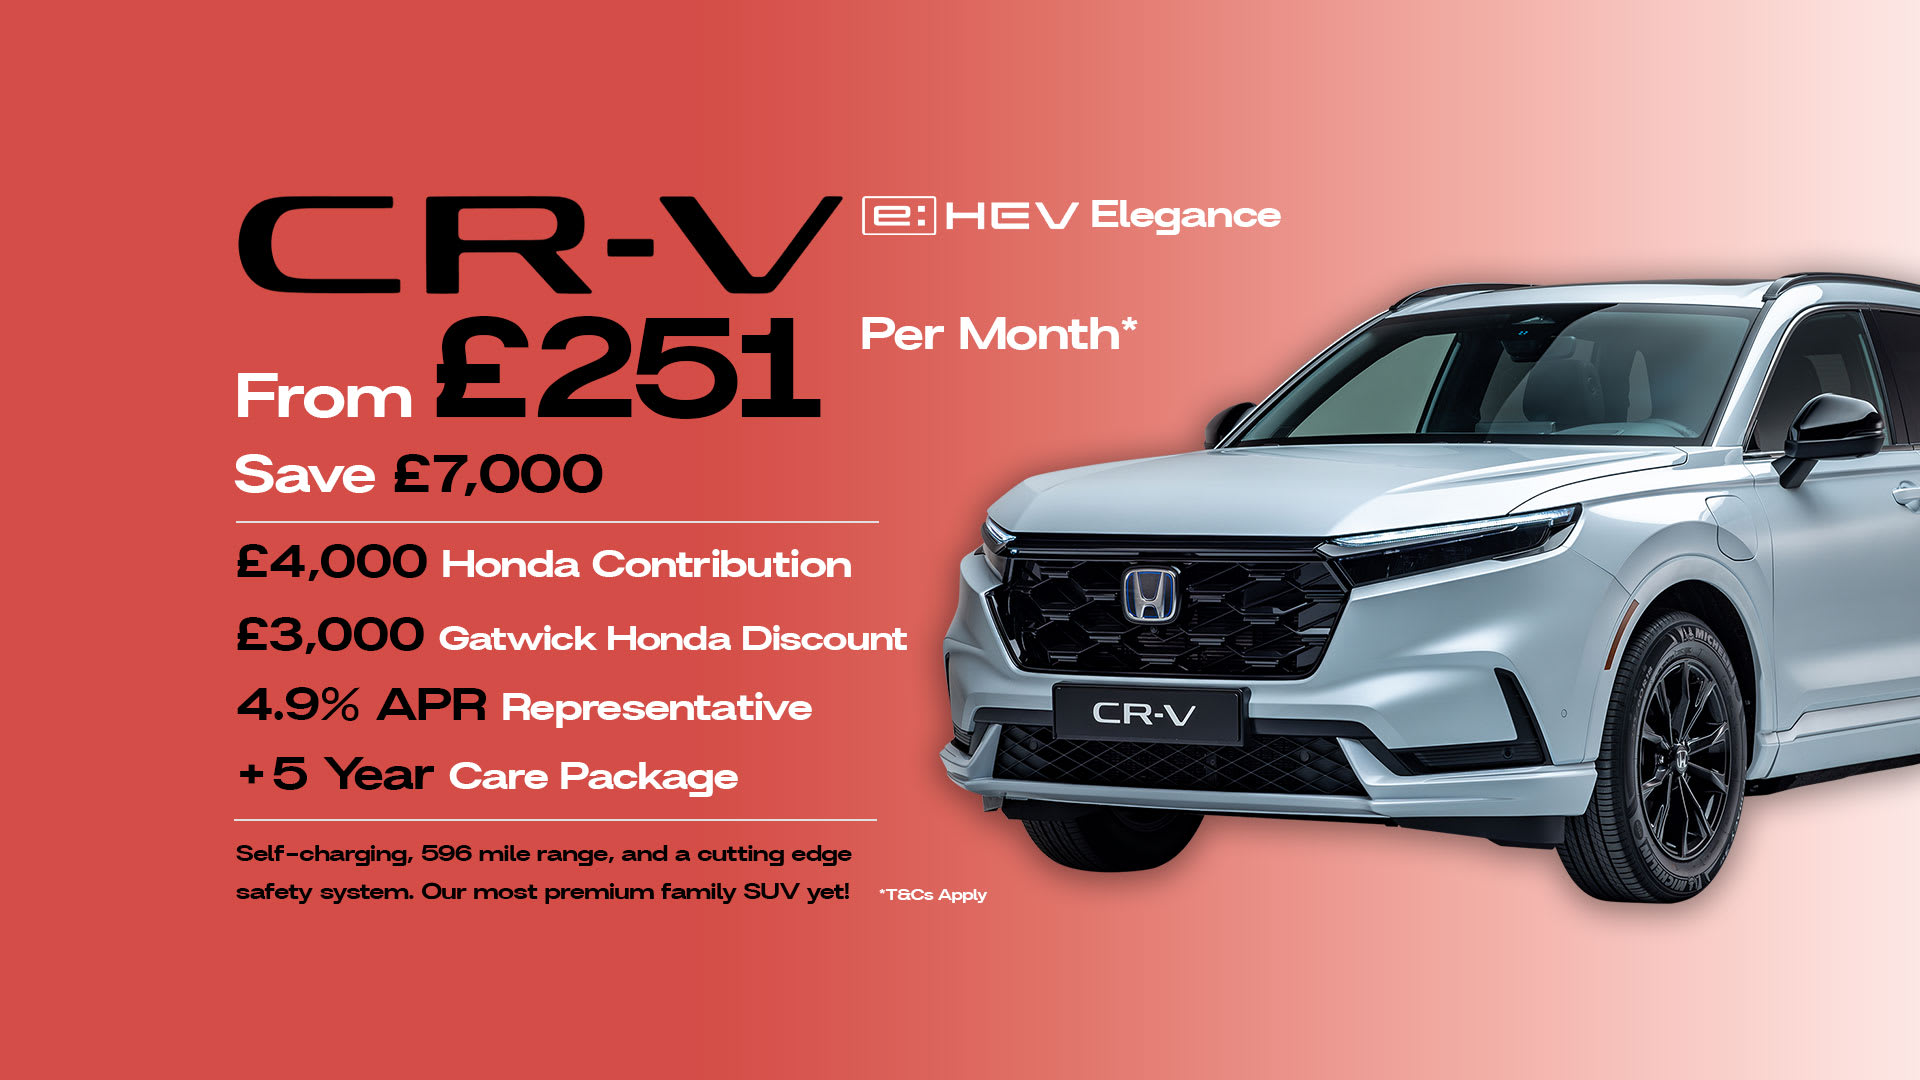 Honda CRV Elegance Finance Offer